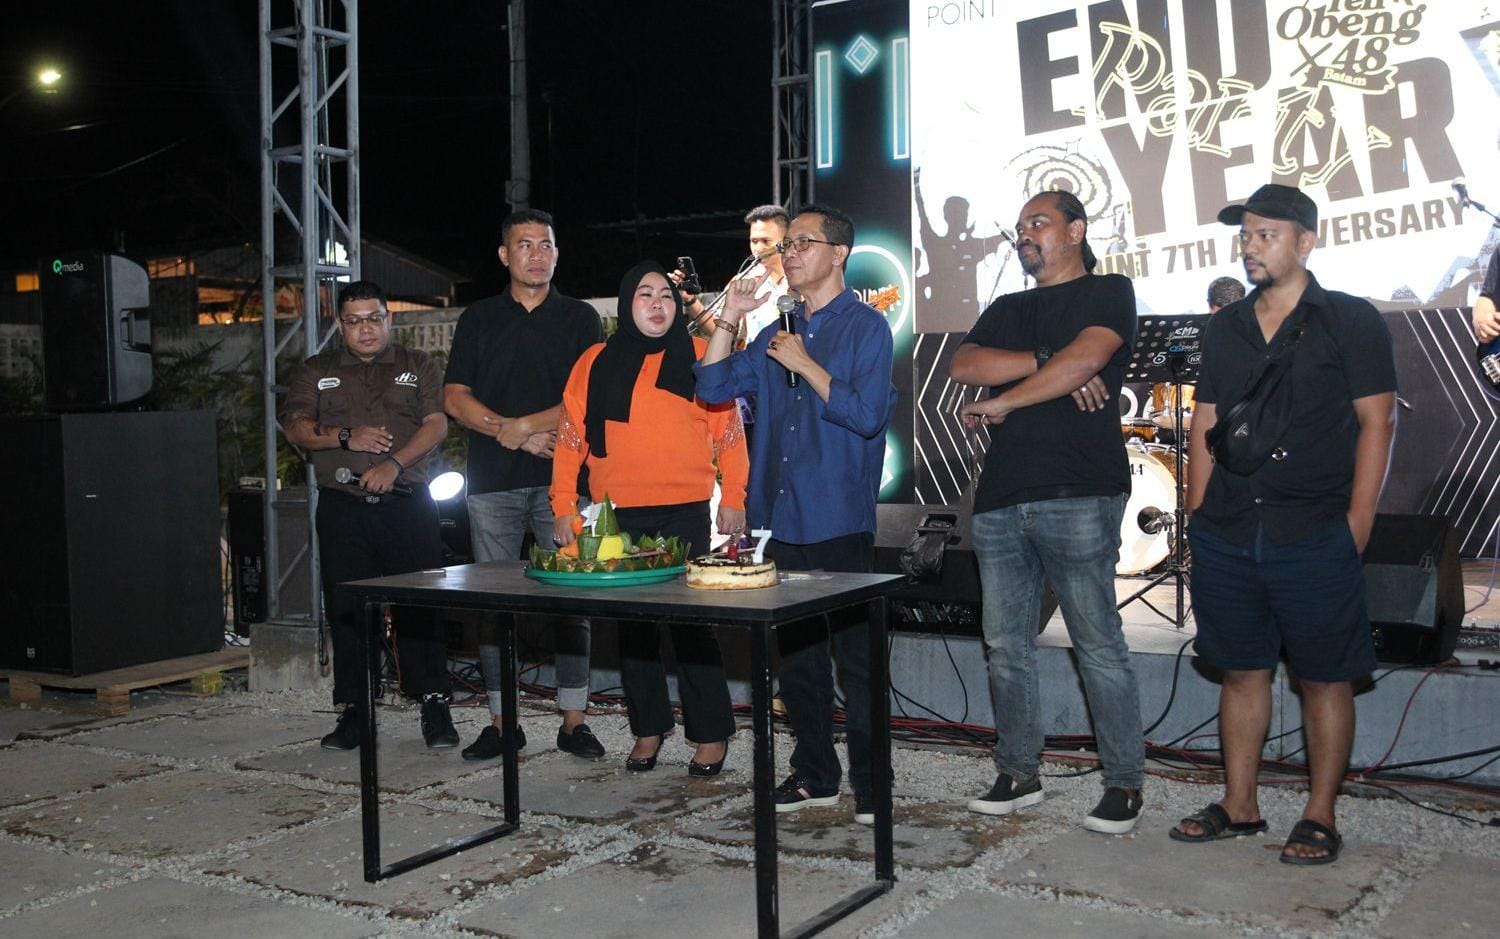 Amsakar Achmad Hadiri Perayaan HUT ke-7 Point Cafe